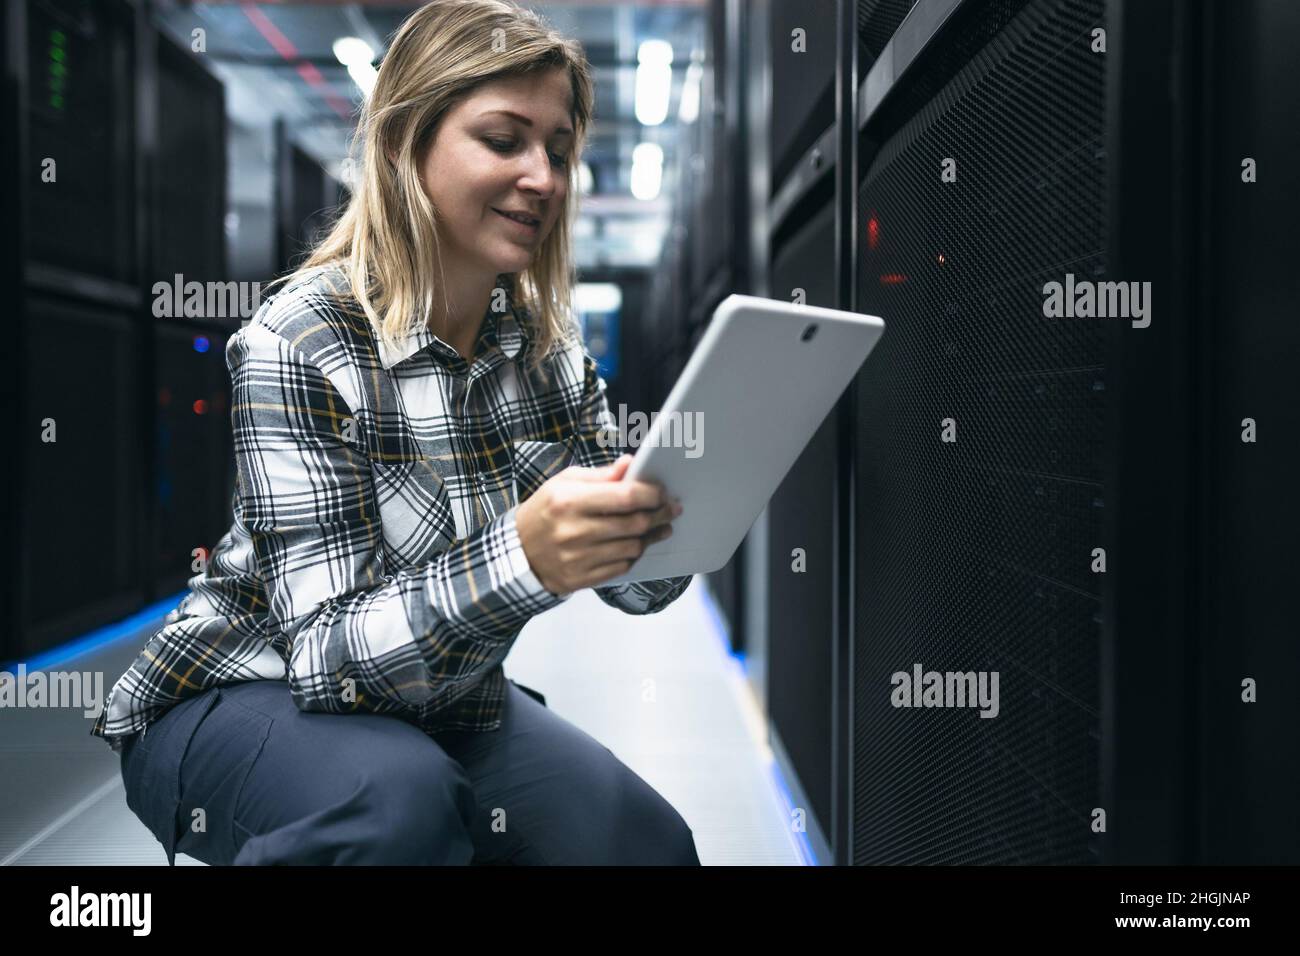 Tecnico del data center femminile che lavora all'interno della sala rack del server Foto Stock